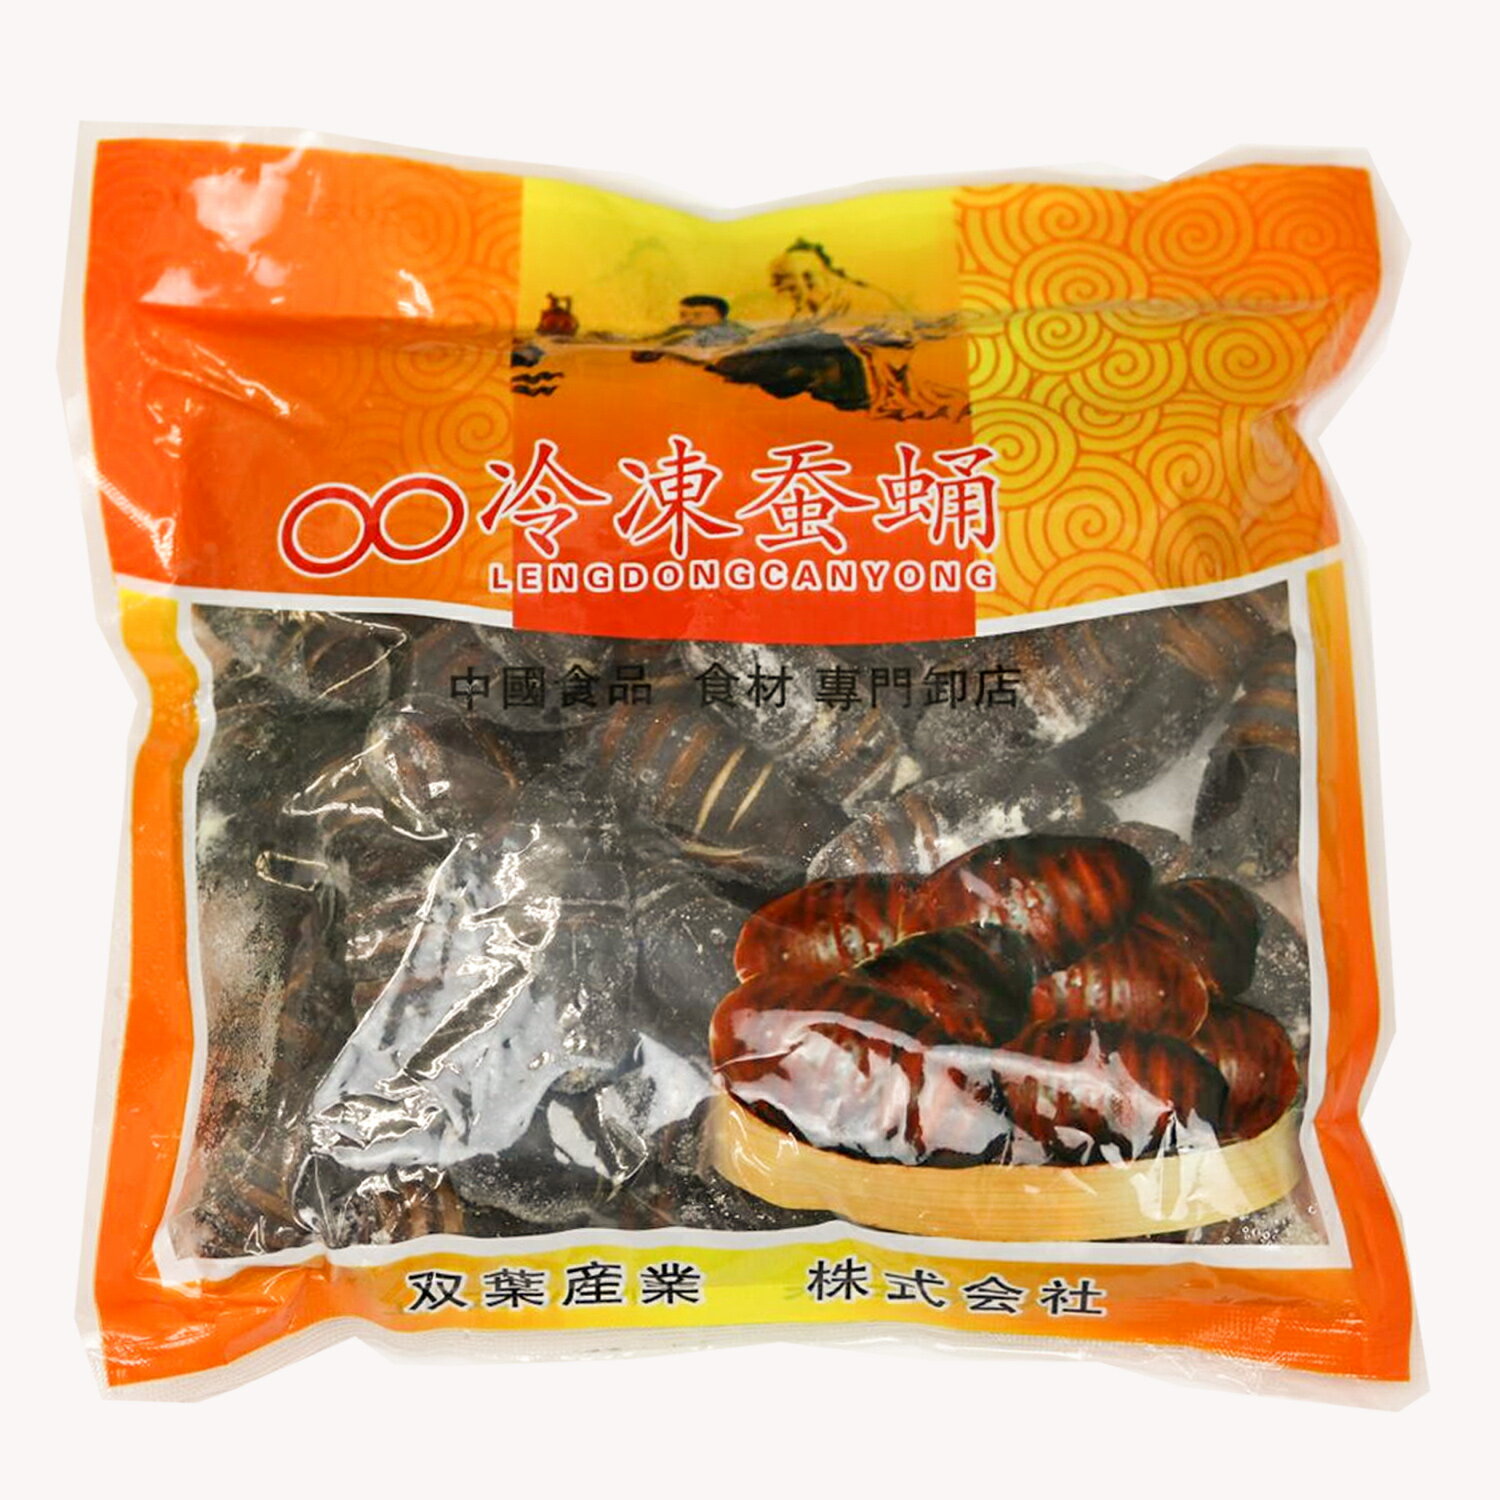 冷凍 蚕蛹(さんよう) 500g 食用 サナギ 蚕のさなぎ 蚕の蛹 ニョンタム カイコのさなぎ タンパク質たっぷり 中華食材 冷凍